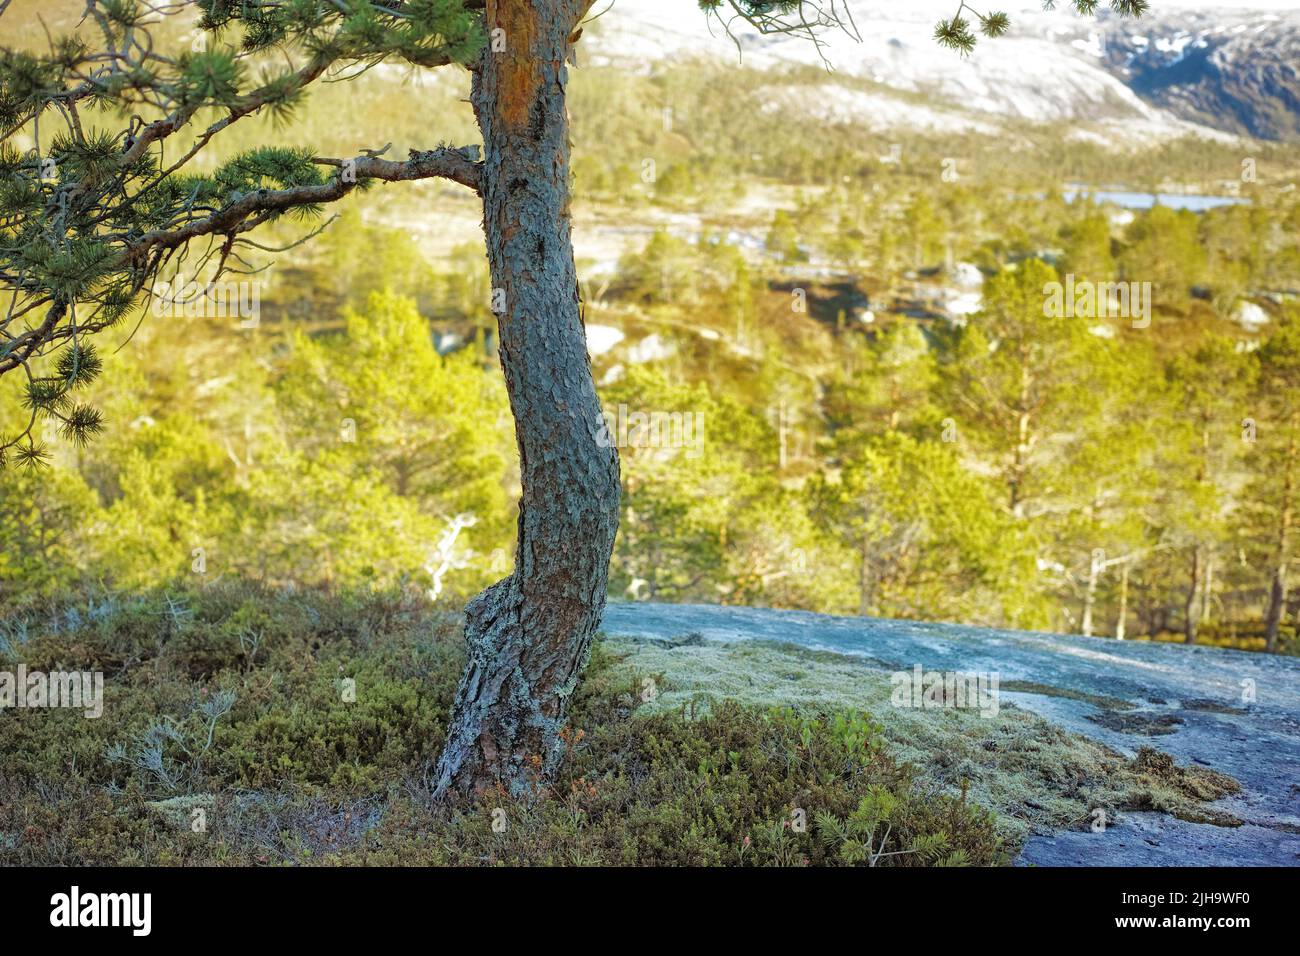 Environnement conservation de la nature ou réserve de pins de montagne dans une forêt de conifères isolée dans une campagne paisible et sereine. Paysage de Banque D'Images